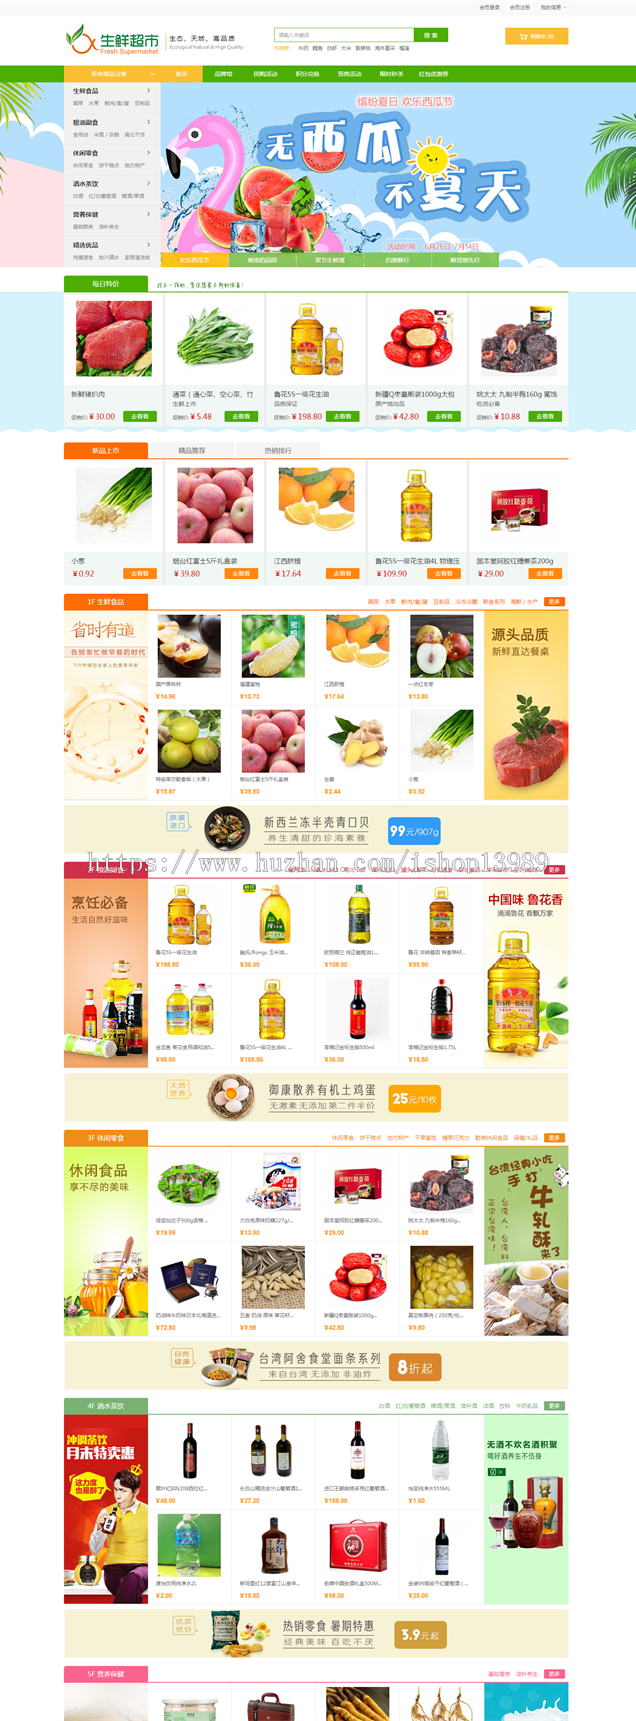 ecshop3.6 生鲜商城网站模板源码 微信农产品商城 微商城 